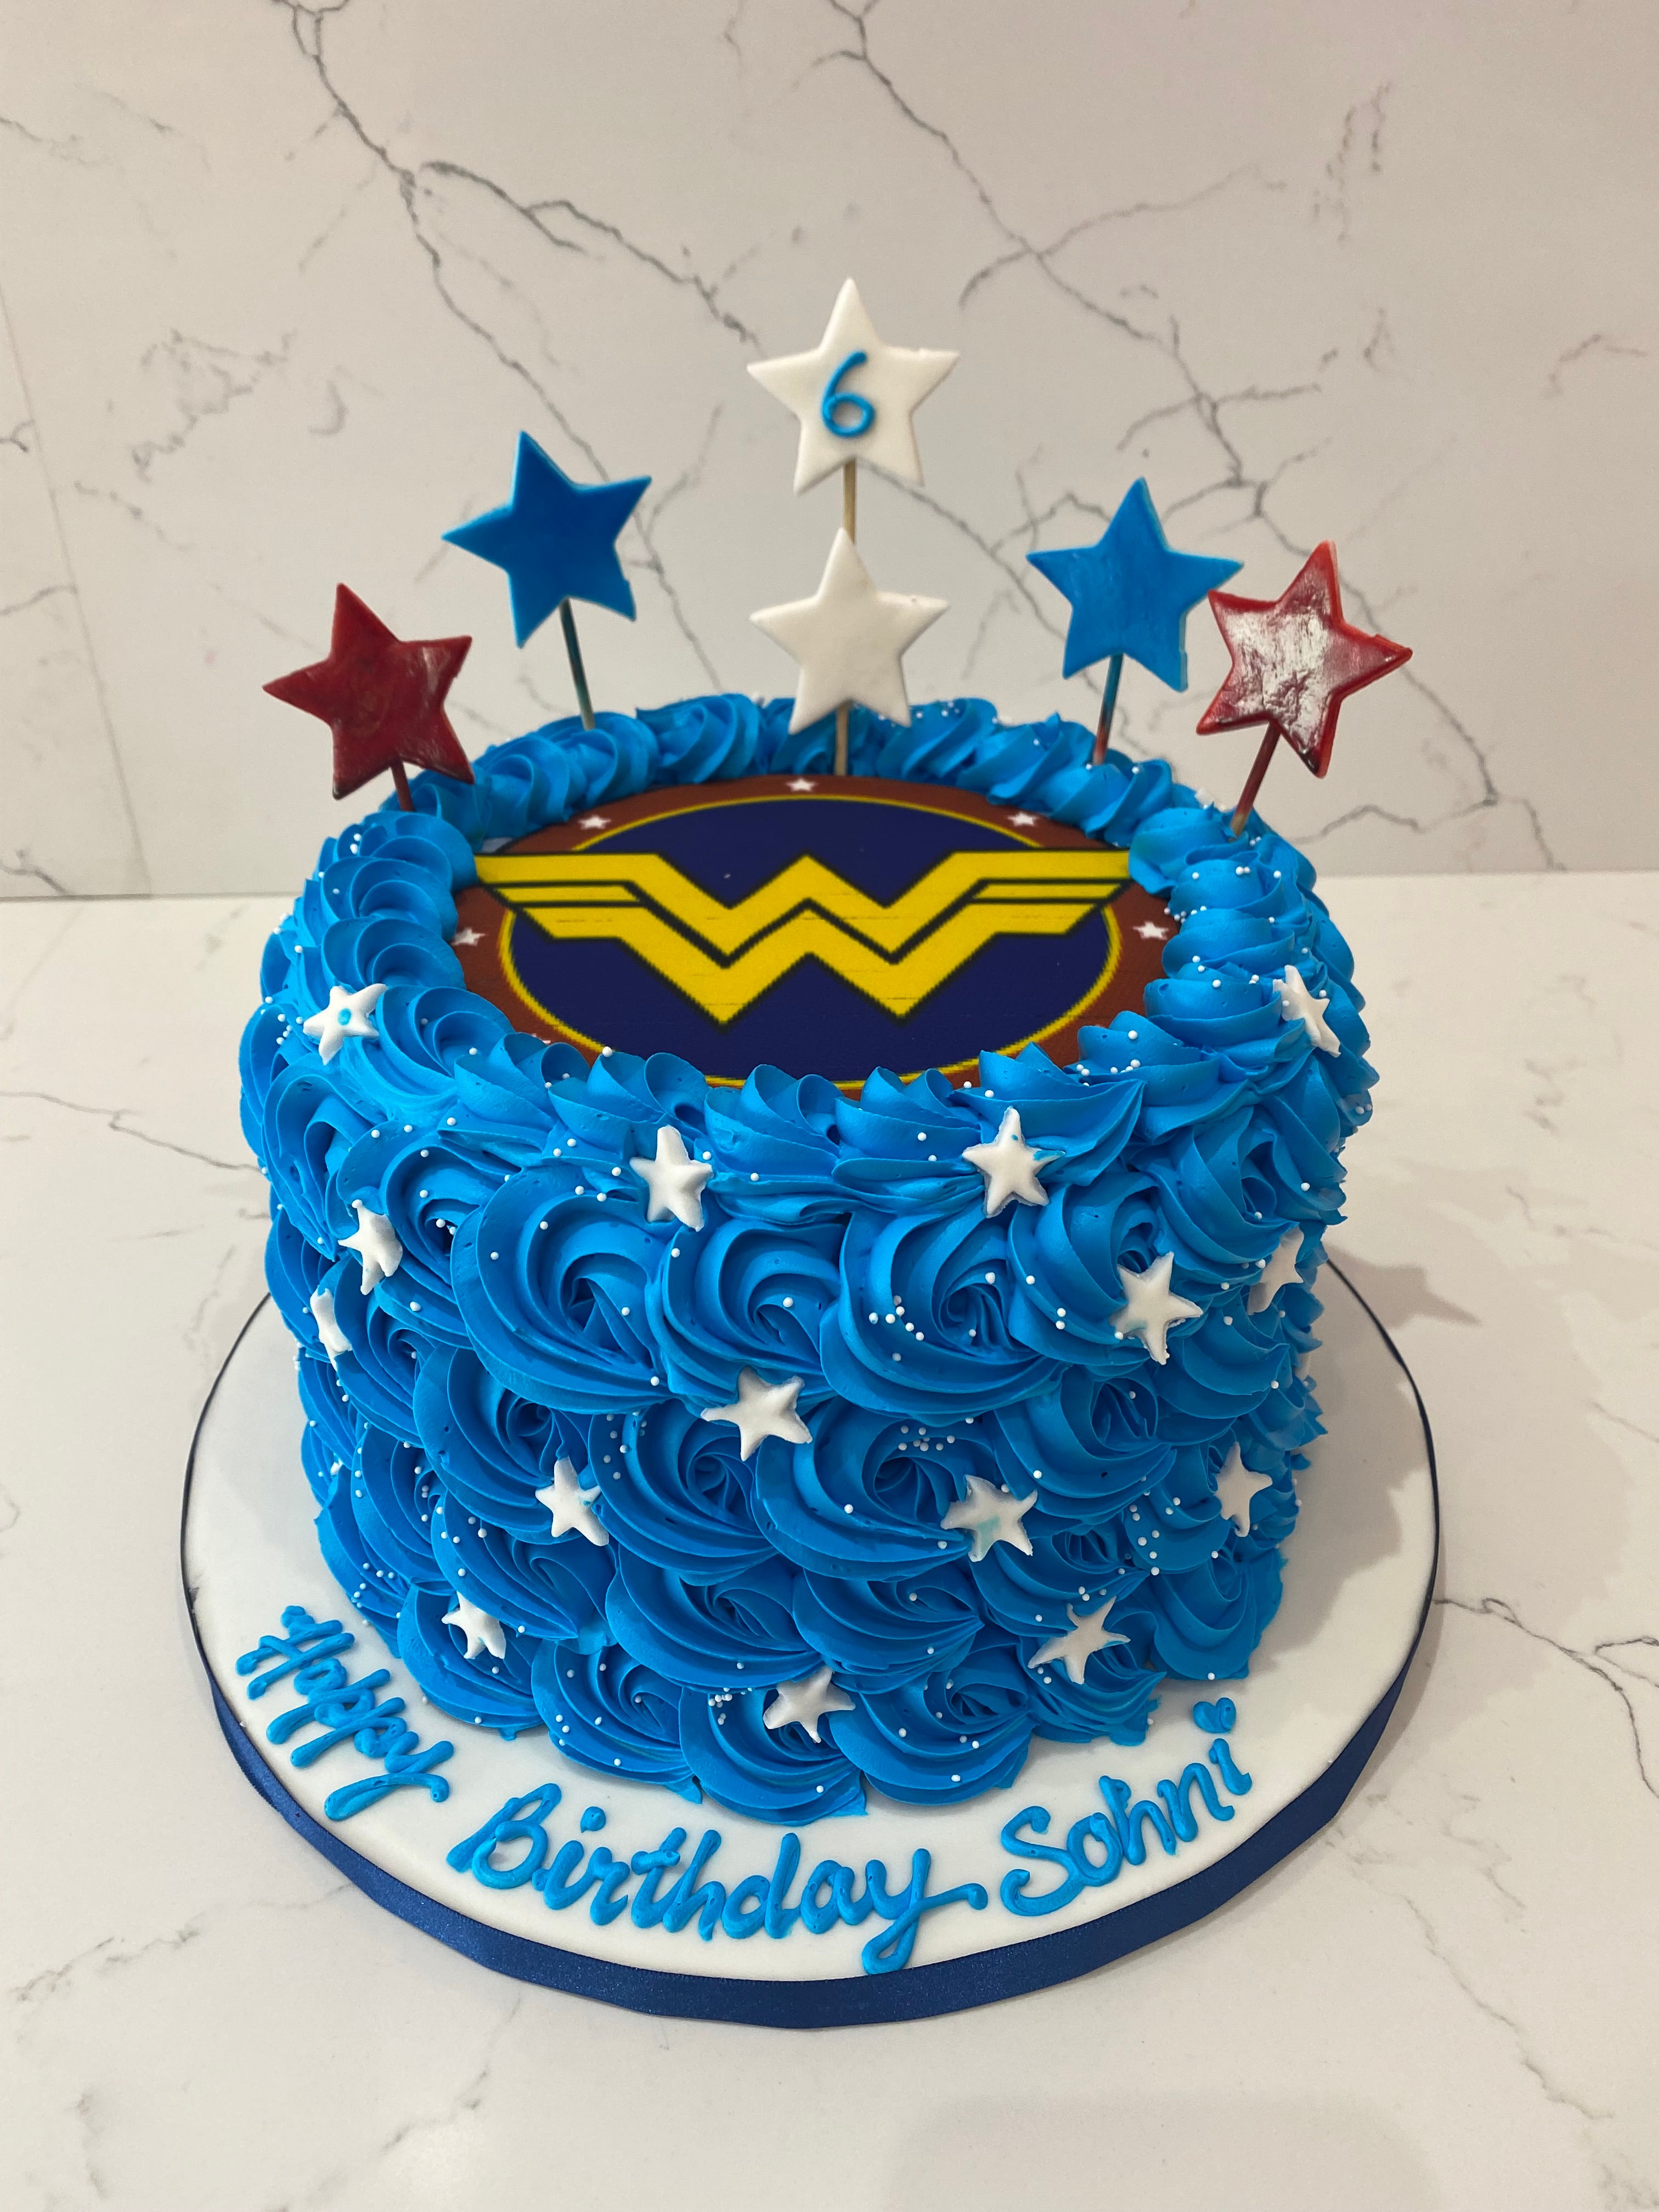 Wonder Woman theme cake - egg/eggless/vegan, Food & Drinks, Homemade Bakes  on Carousell